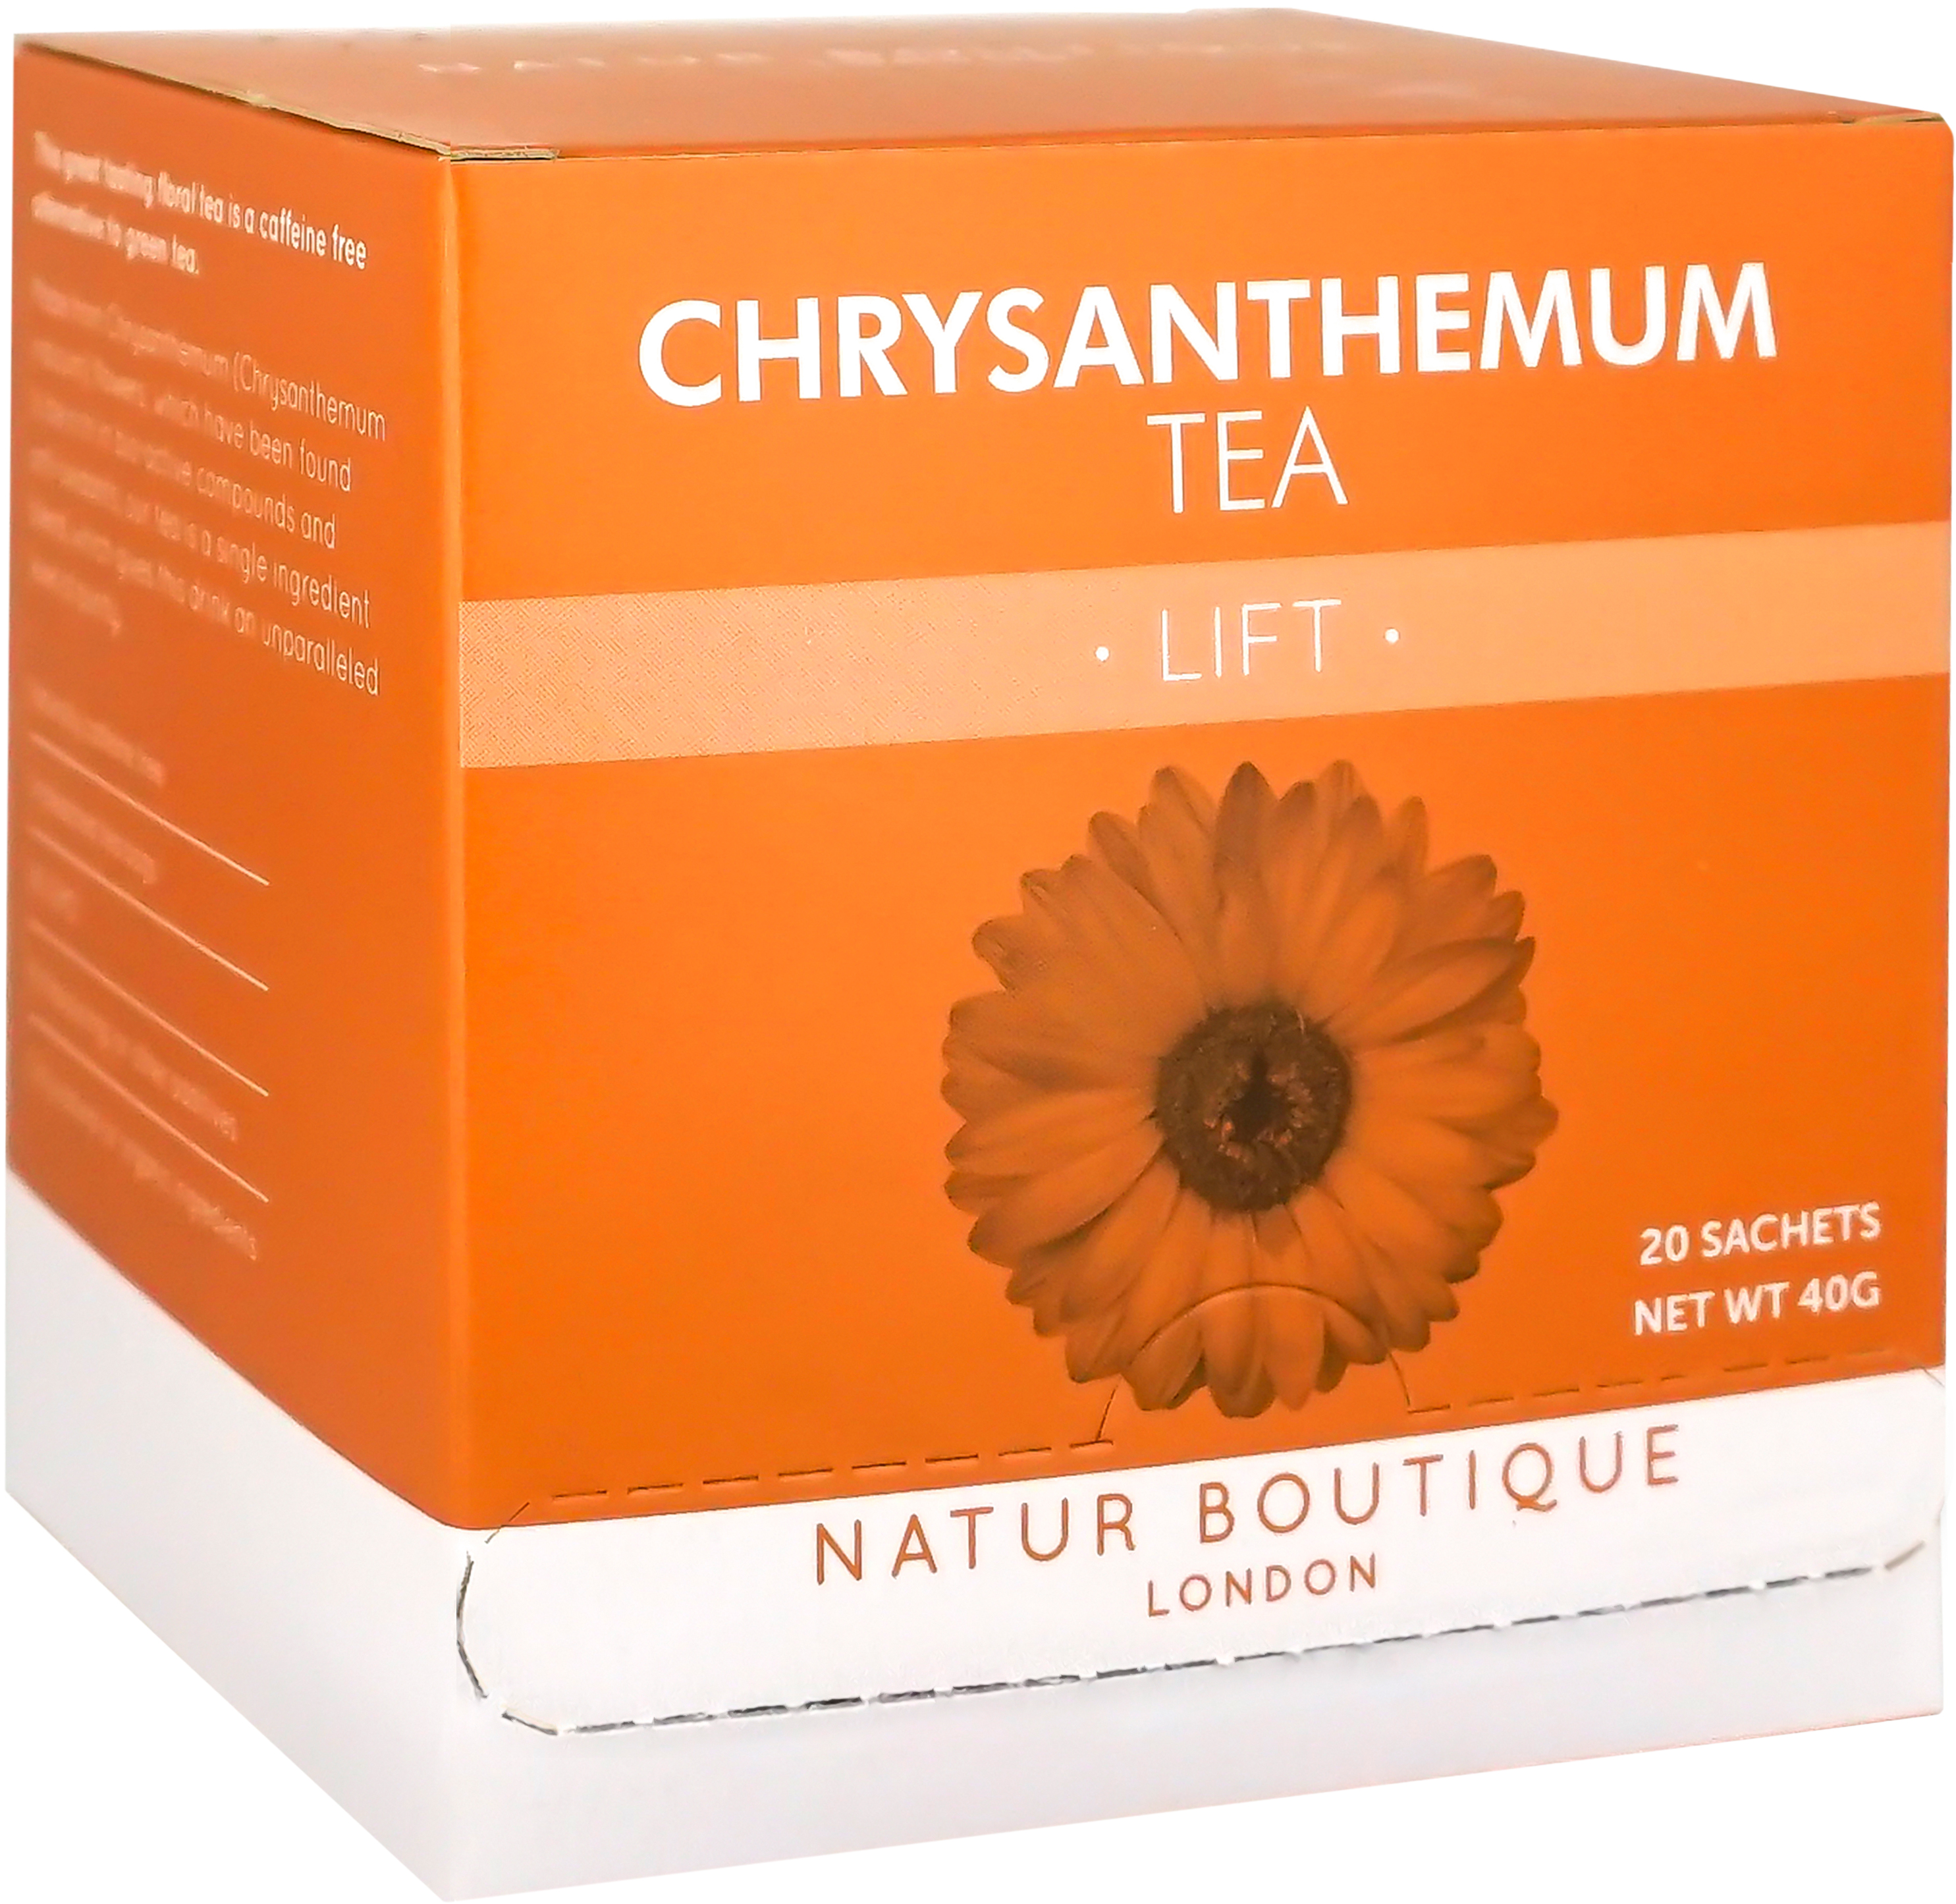 Chrysanthemum - Natur Boutique